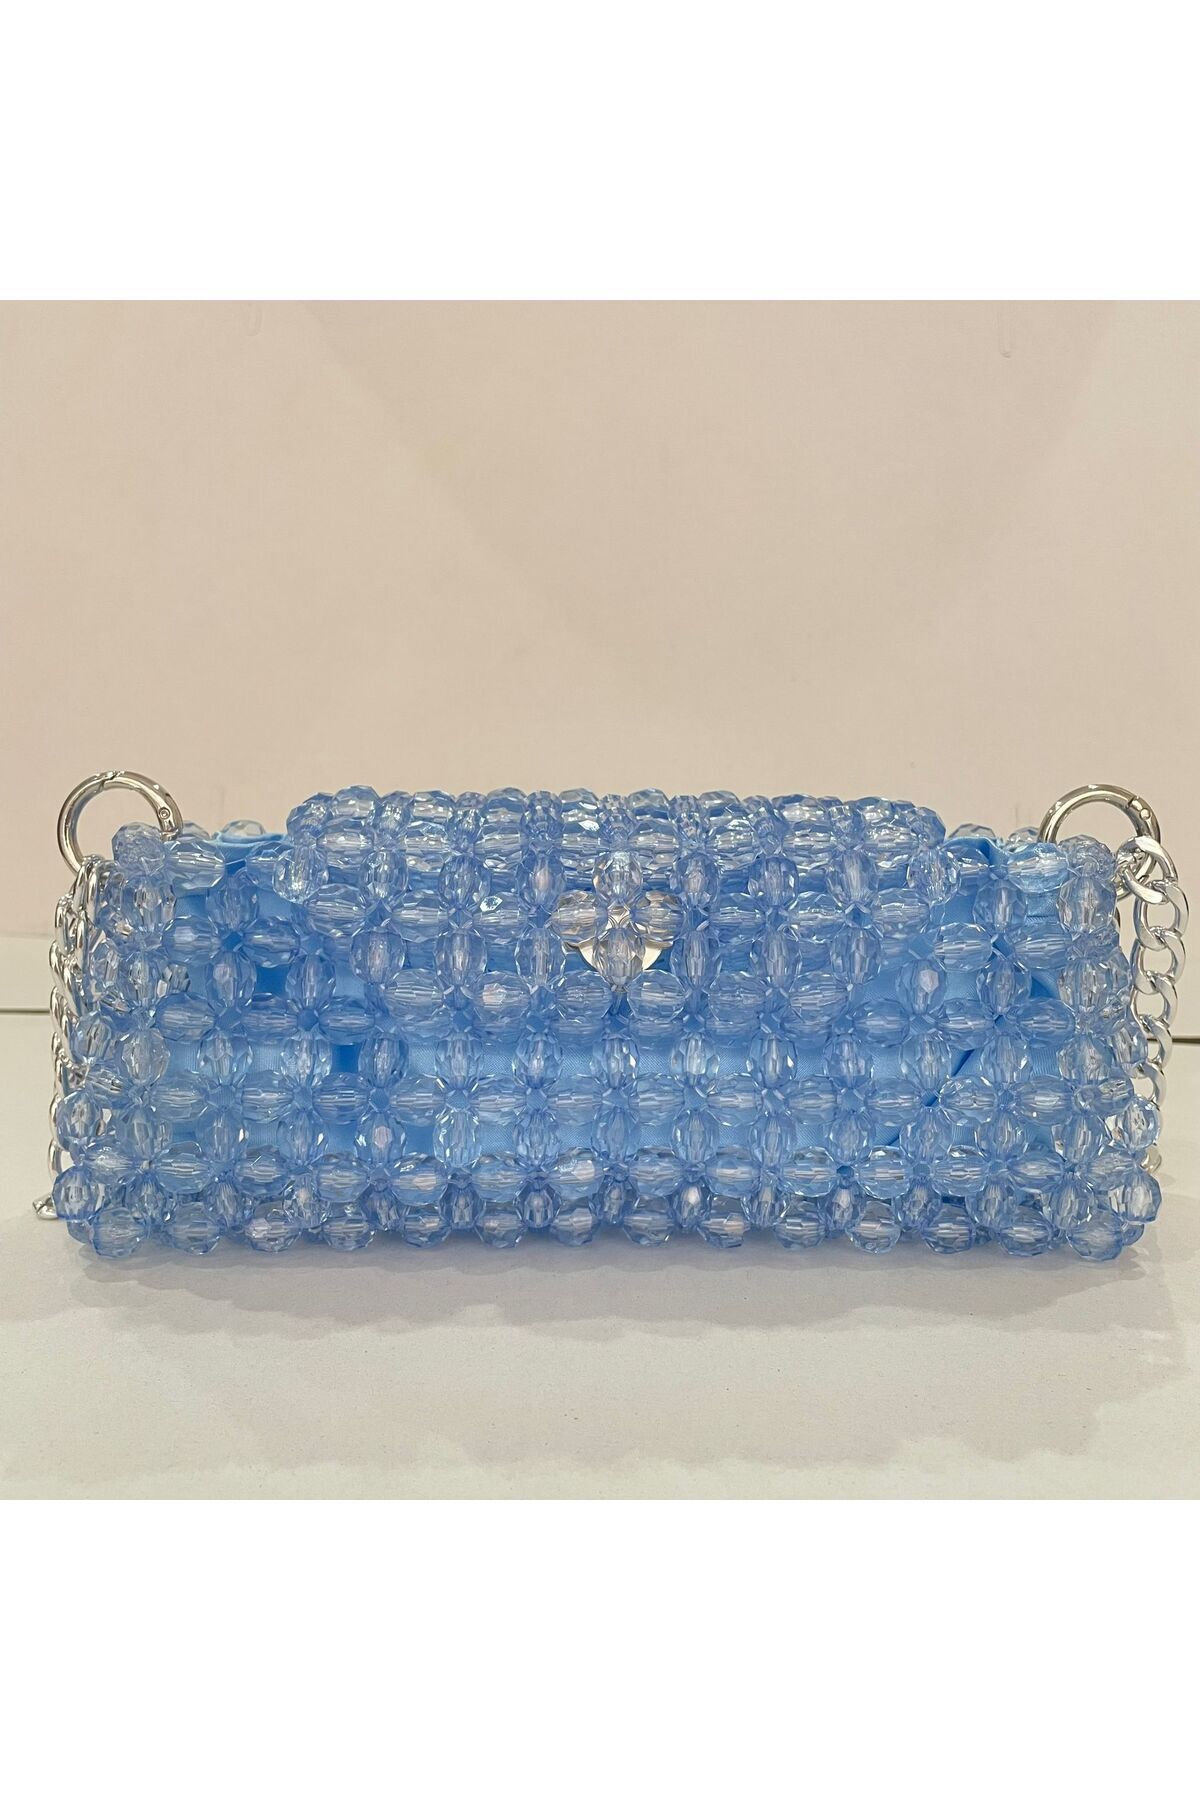 sirius art design Bebe Mavi Çanta - Mavi Kristal Çanta - Astarlı Çanta - Davet Çantası